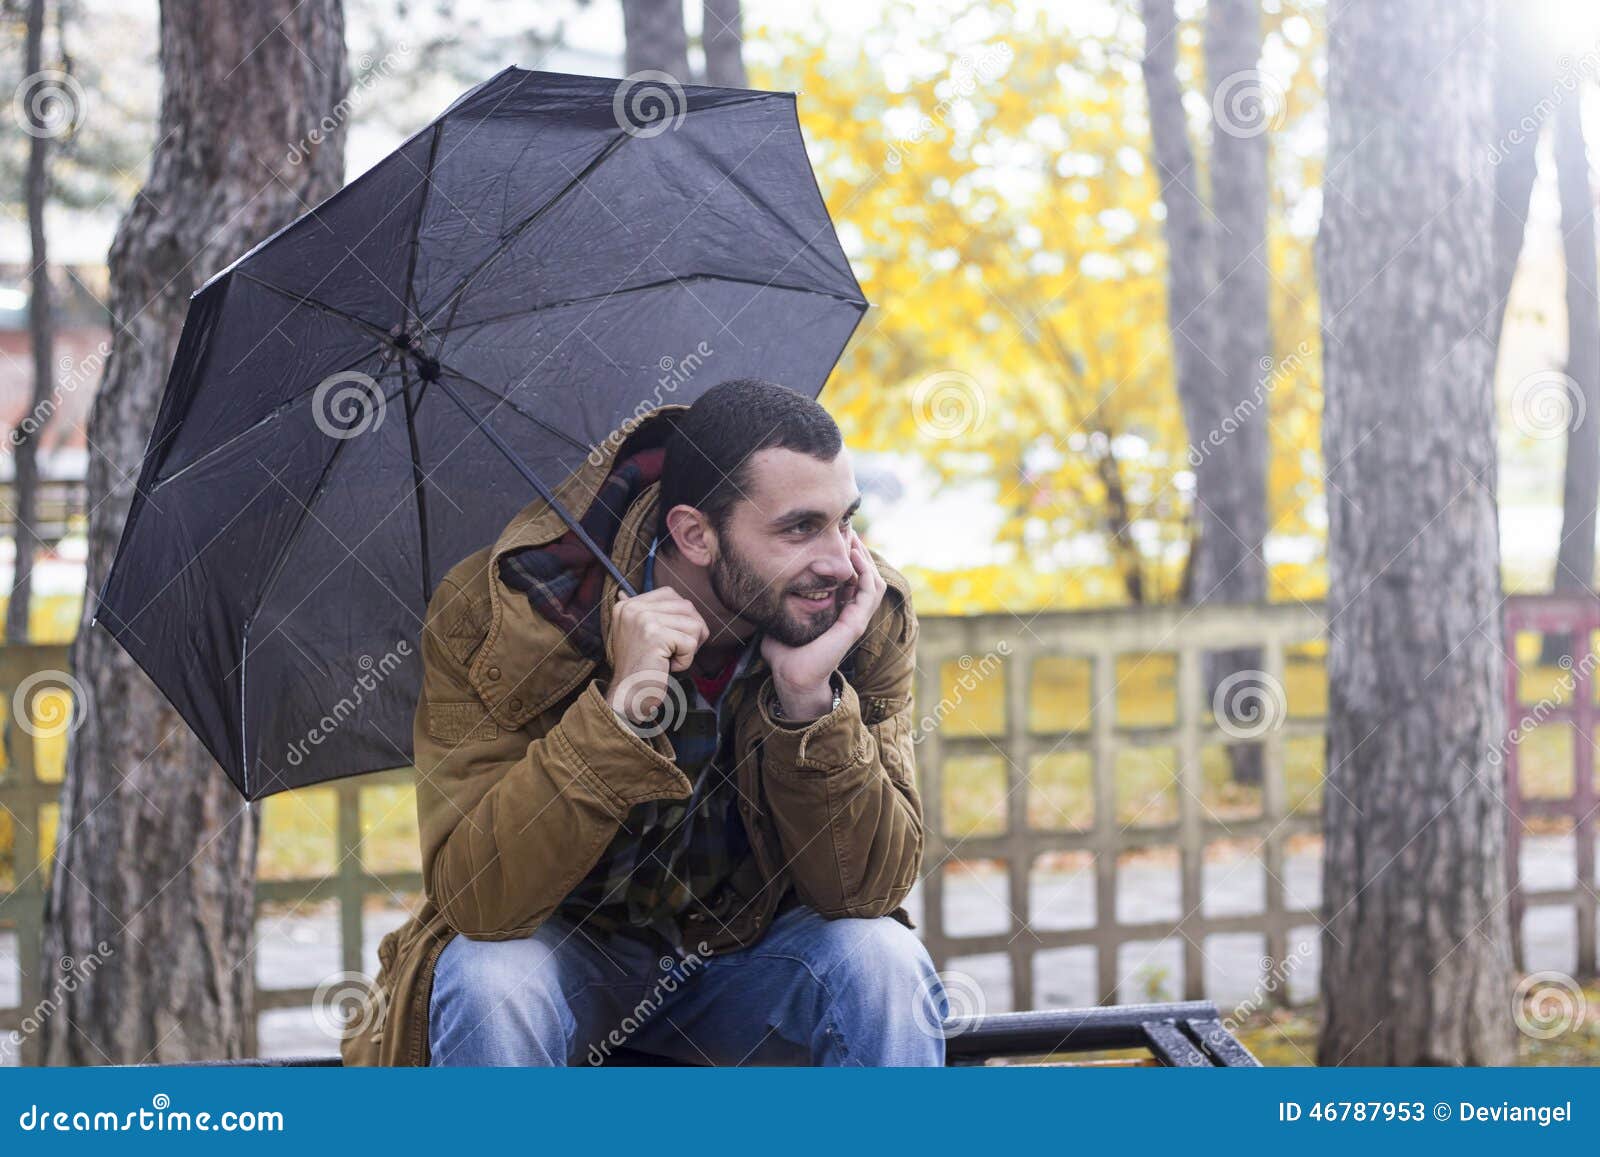 Зонтик сидит. Человек на лавочке держит зонт. Сидит с зонтом. Фонарь держит зонтик над скамейкой. Парень сидит с зонтом поза.